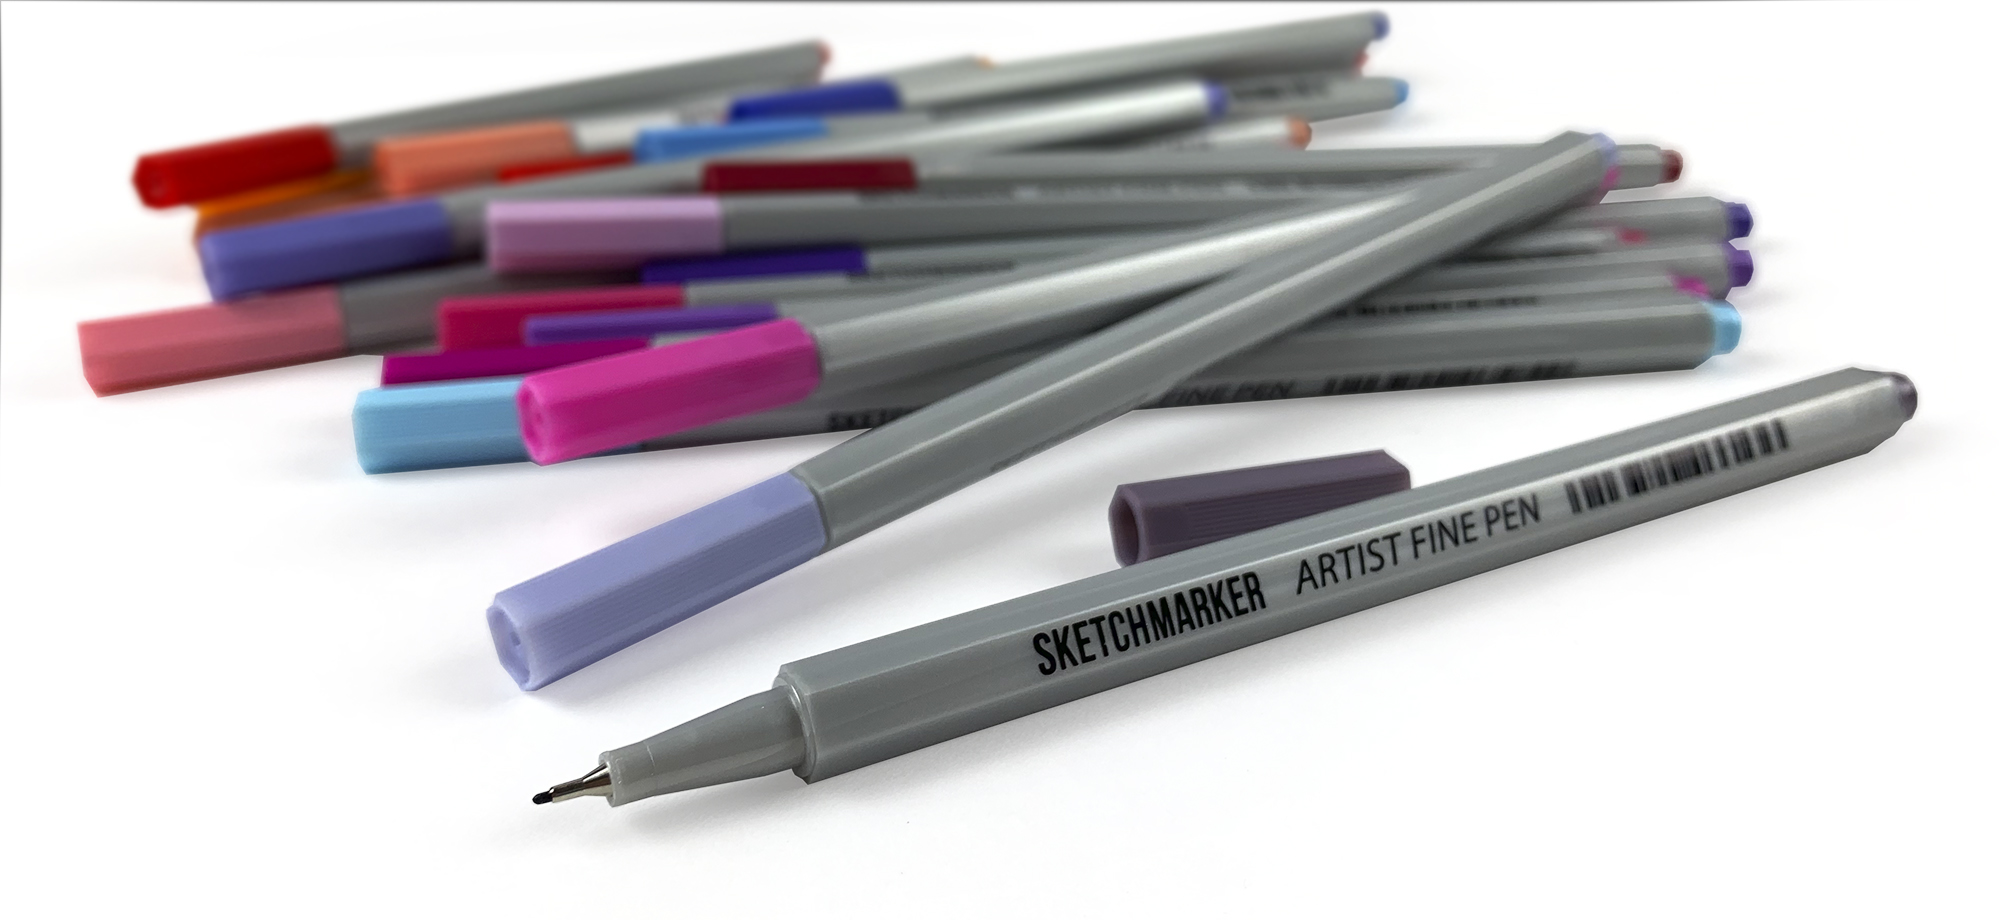 Набор капиллярных ручек SKETCHMARKER Artist fine pen 12 цв., разный состав SKM-AFP-12BAS1;SKM-AFP-12BAS2;SKM-AFP-12BAS3;SKM-AFP-12BAS4 - фото 4